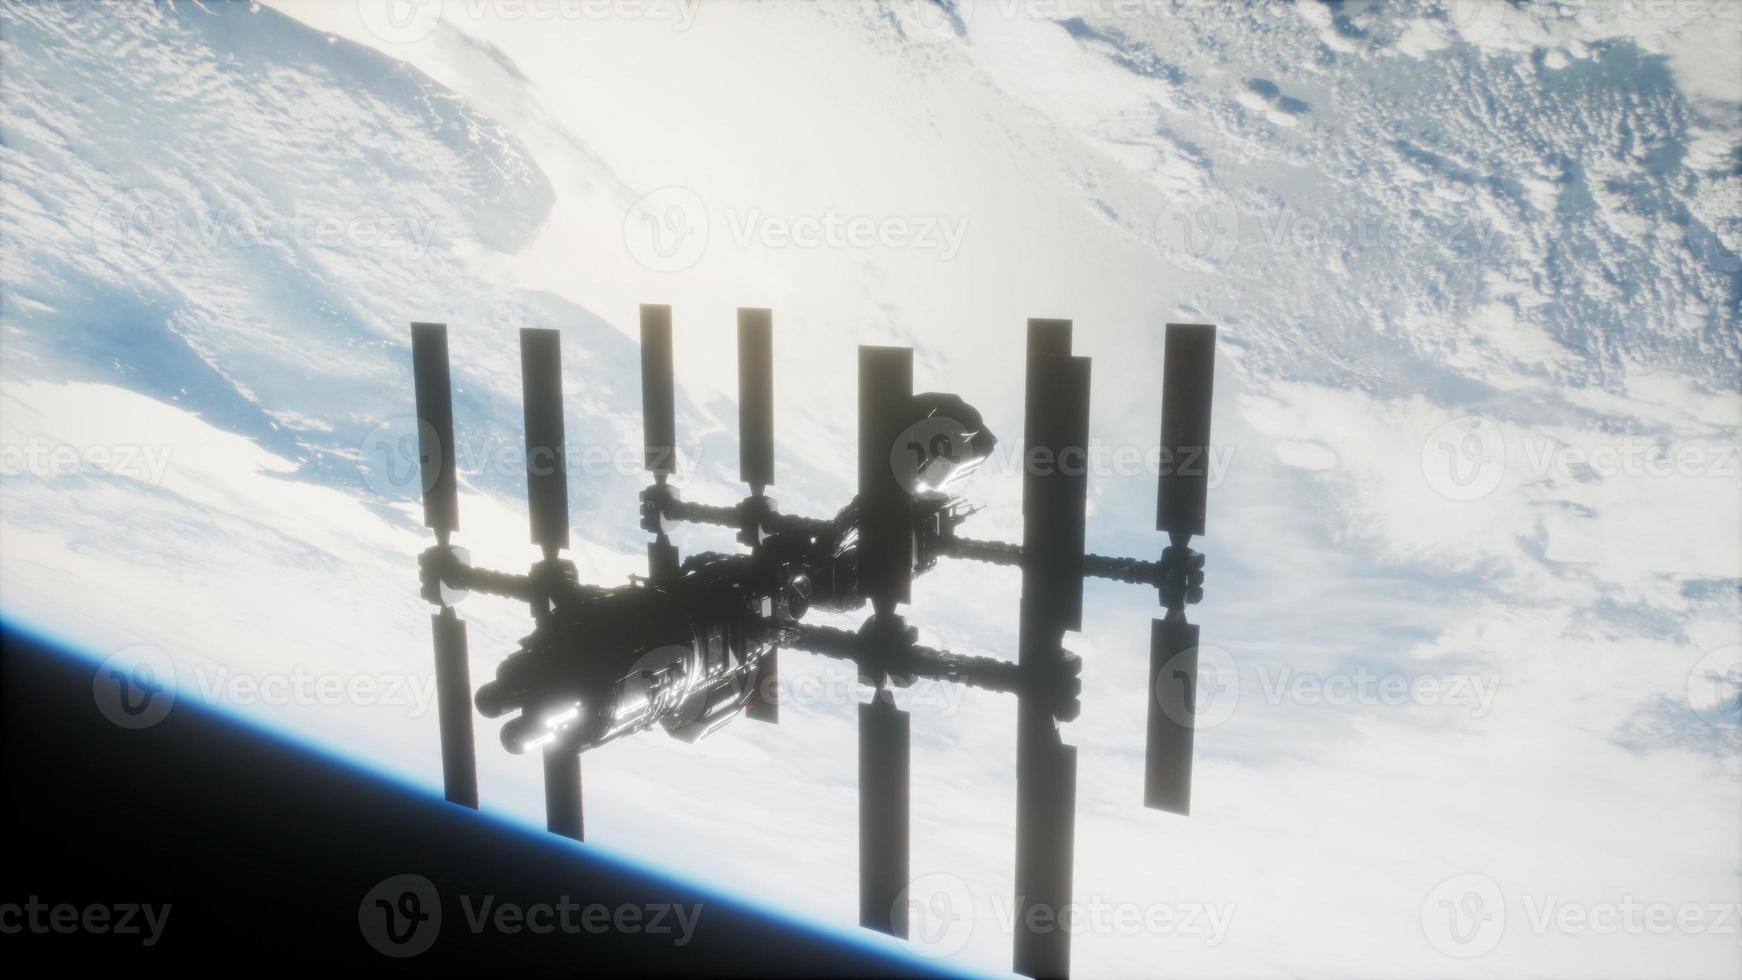 estación espacial internacional en el espacio ultraterrestre sobre el planeta tierra foto